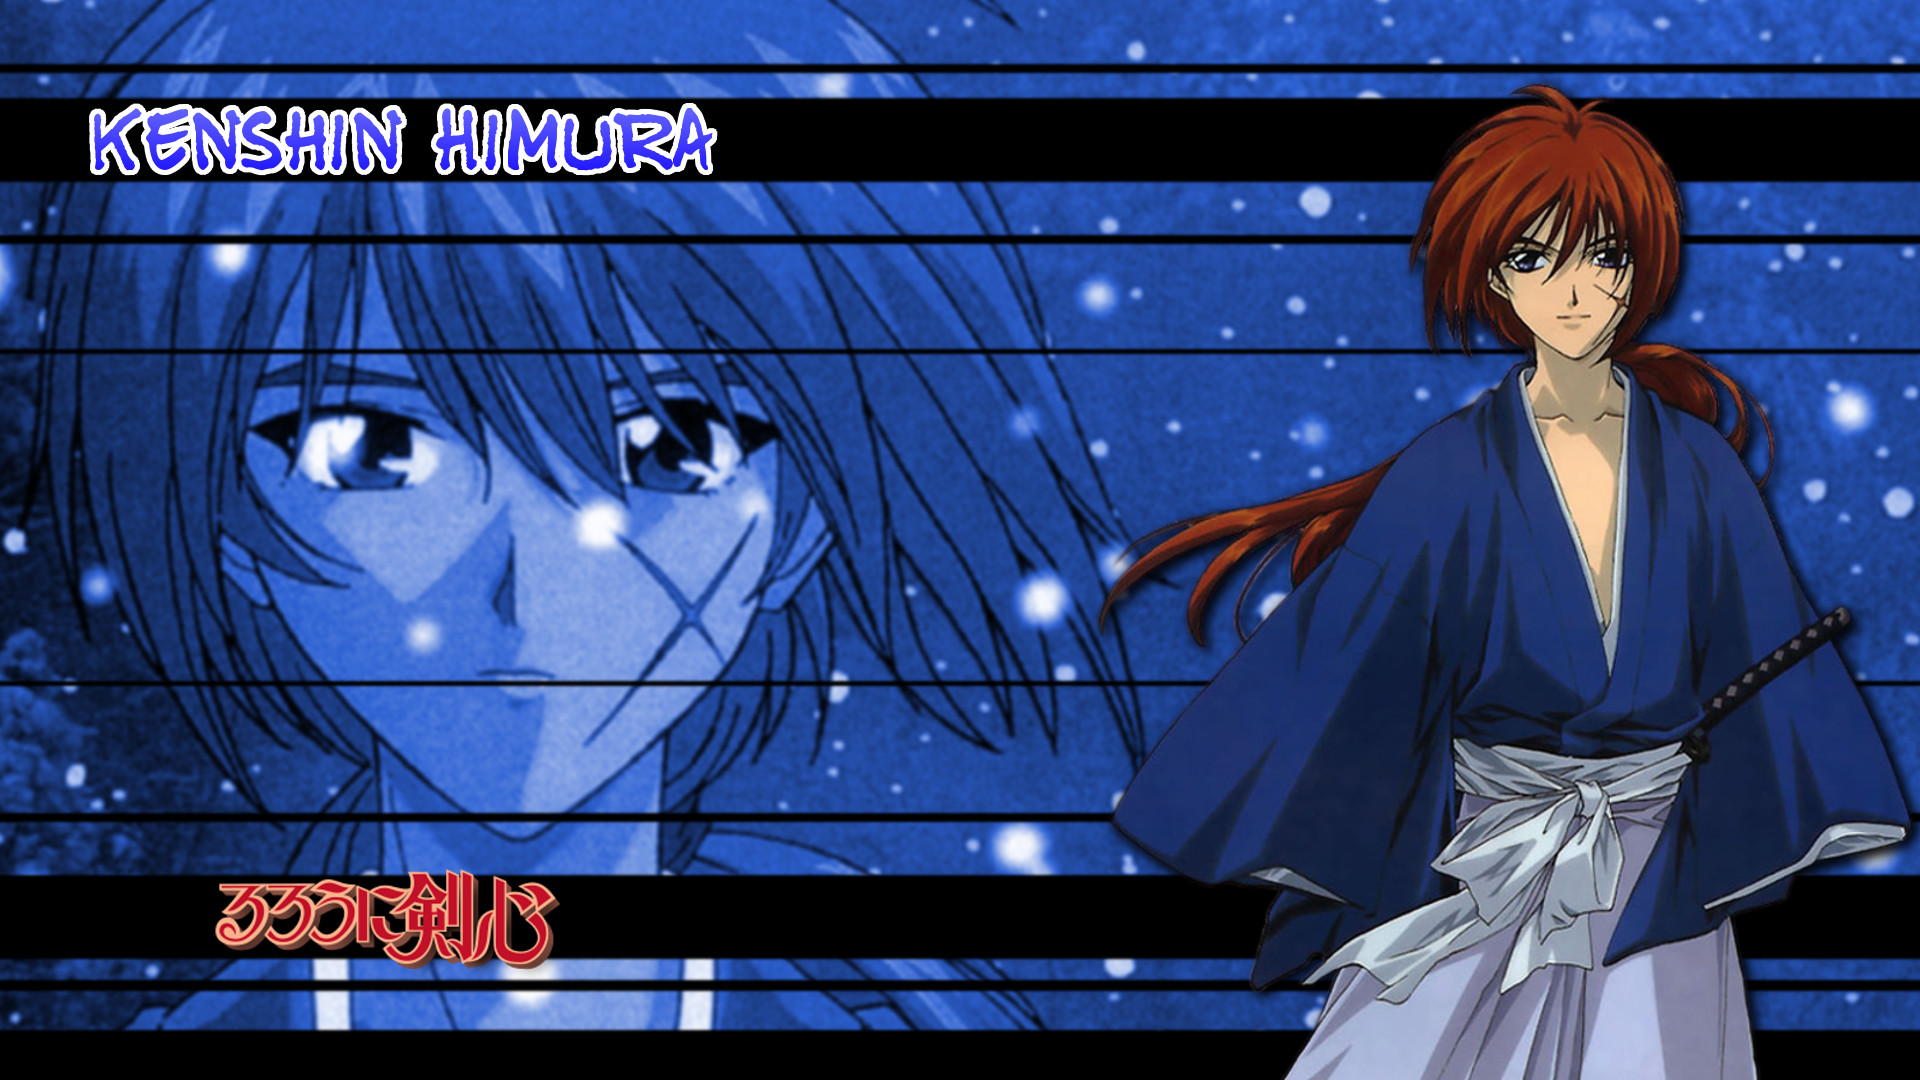 1920x1080 Rurouni Kenshin Kenshin Himura 01 by NekoTheOtaku Rurouni Kenshin Kenshin  Himura 01 by NekoTheOtaku